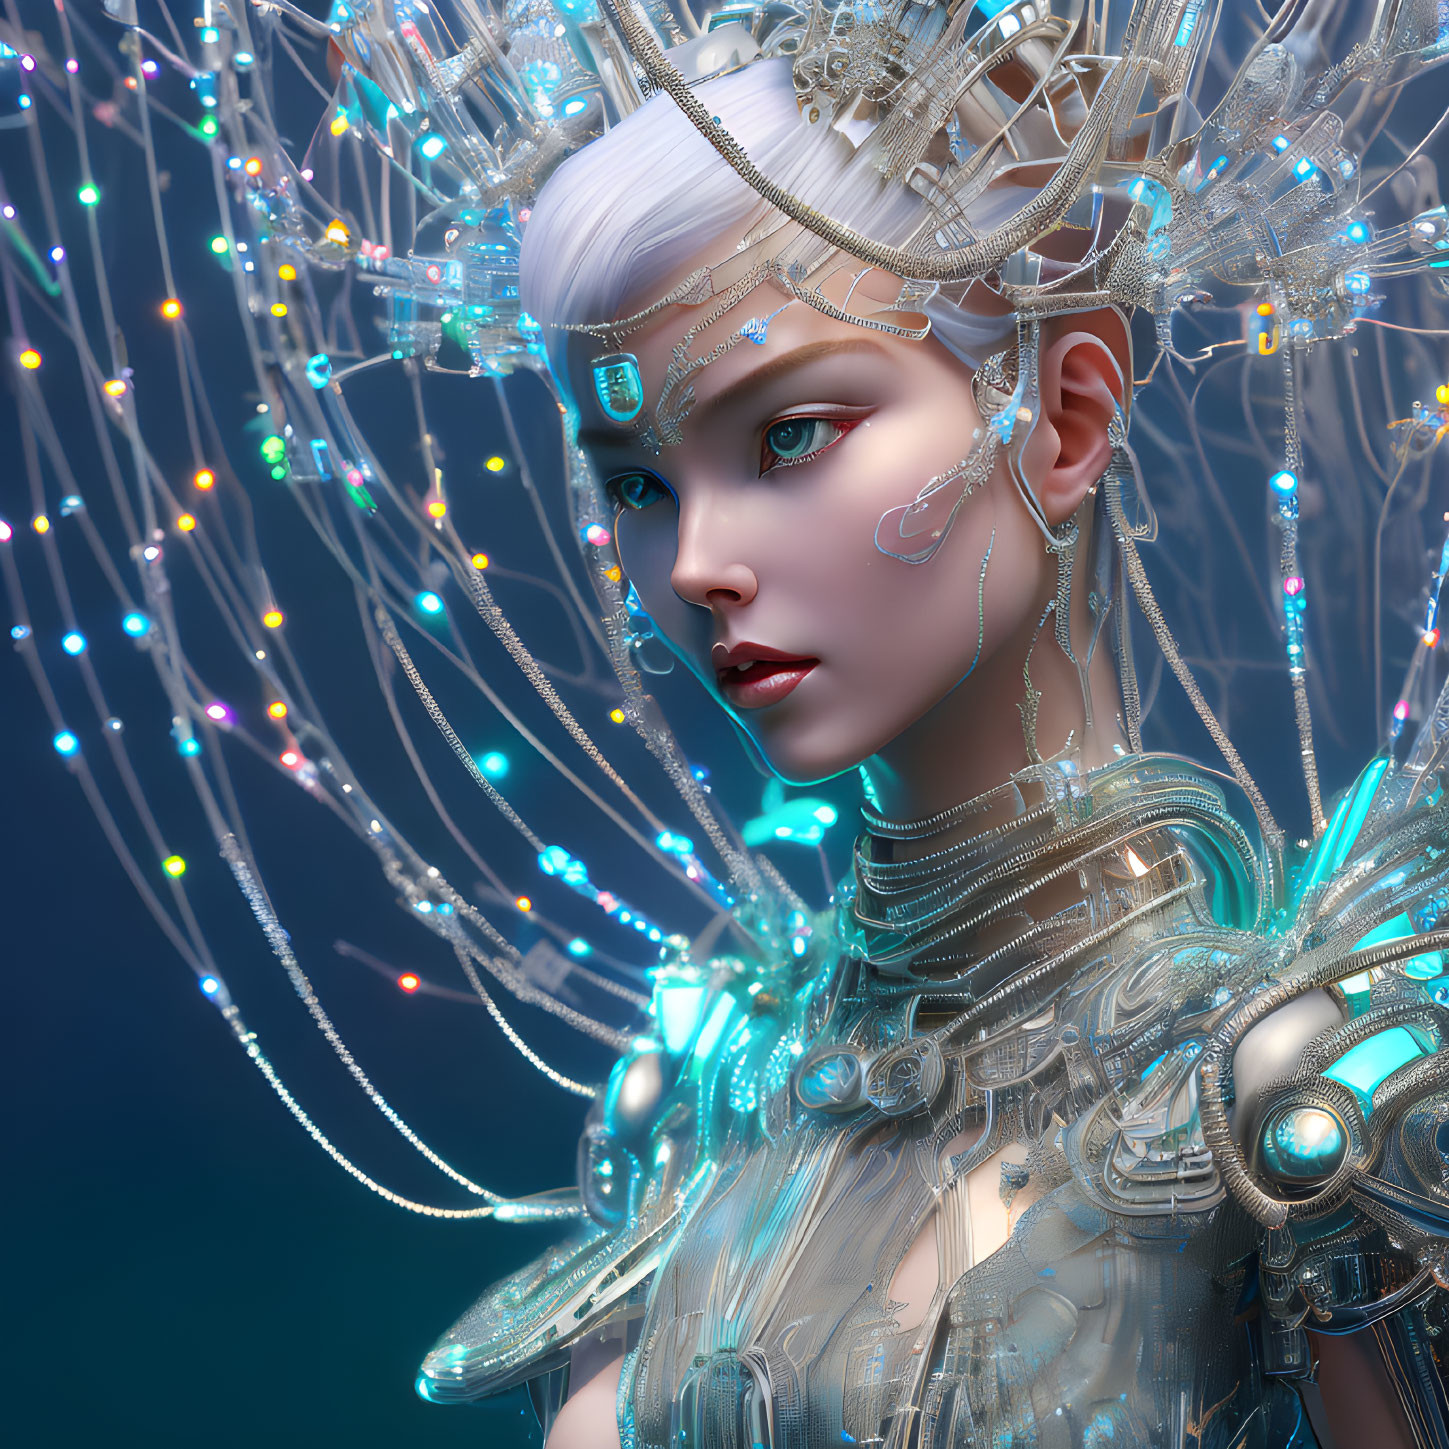 Futuristic woman with glowing headgear and metallic armor